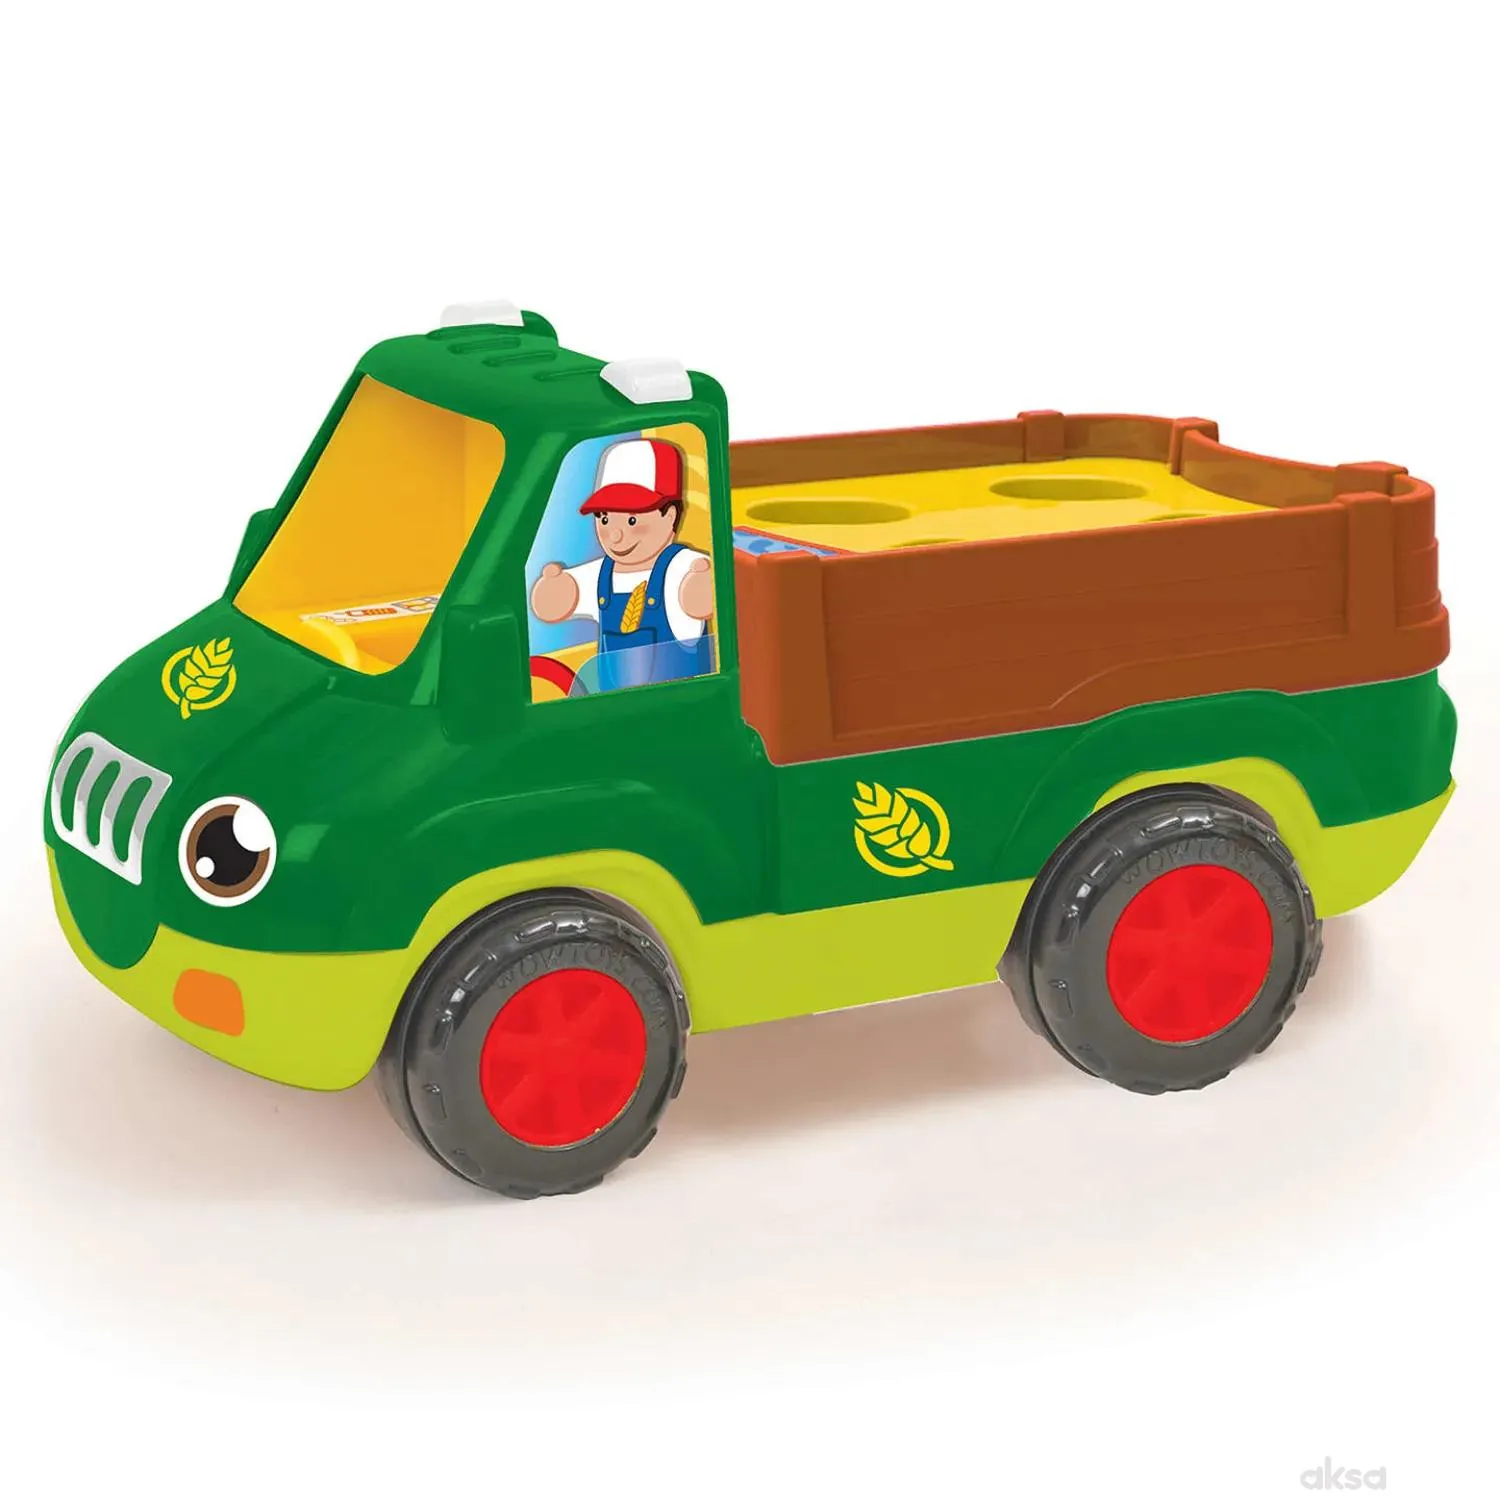 Wow igračka farmerski kamion Freddie 